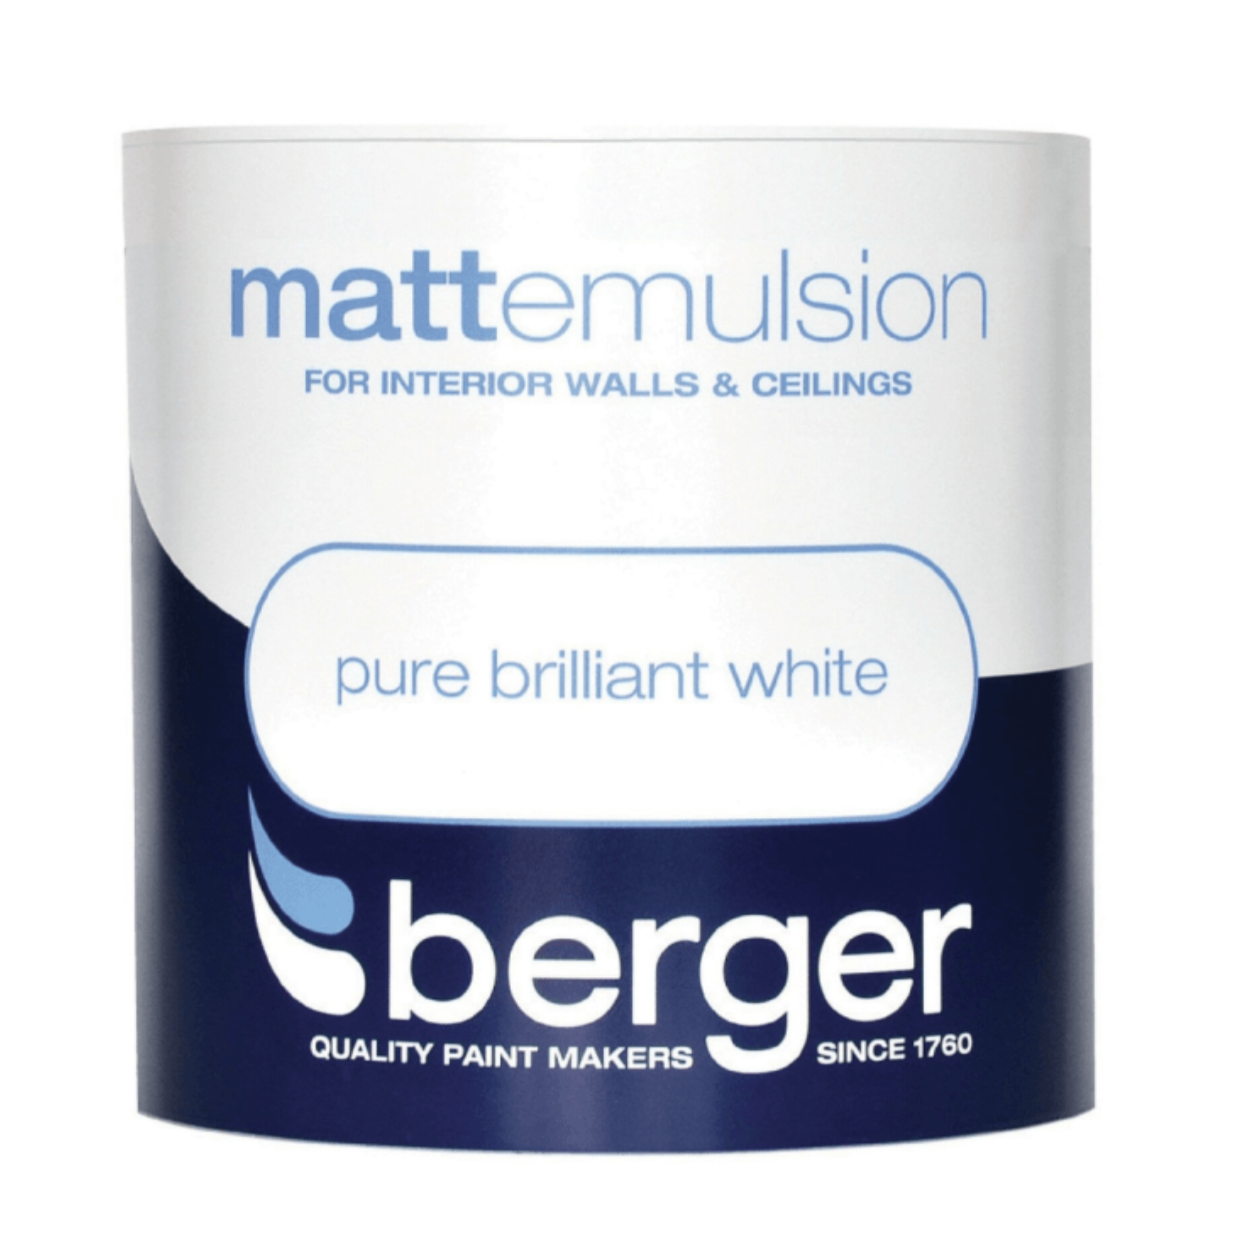 Pure Brilliant White Matt Emulsion